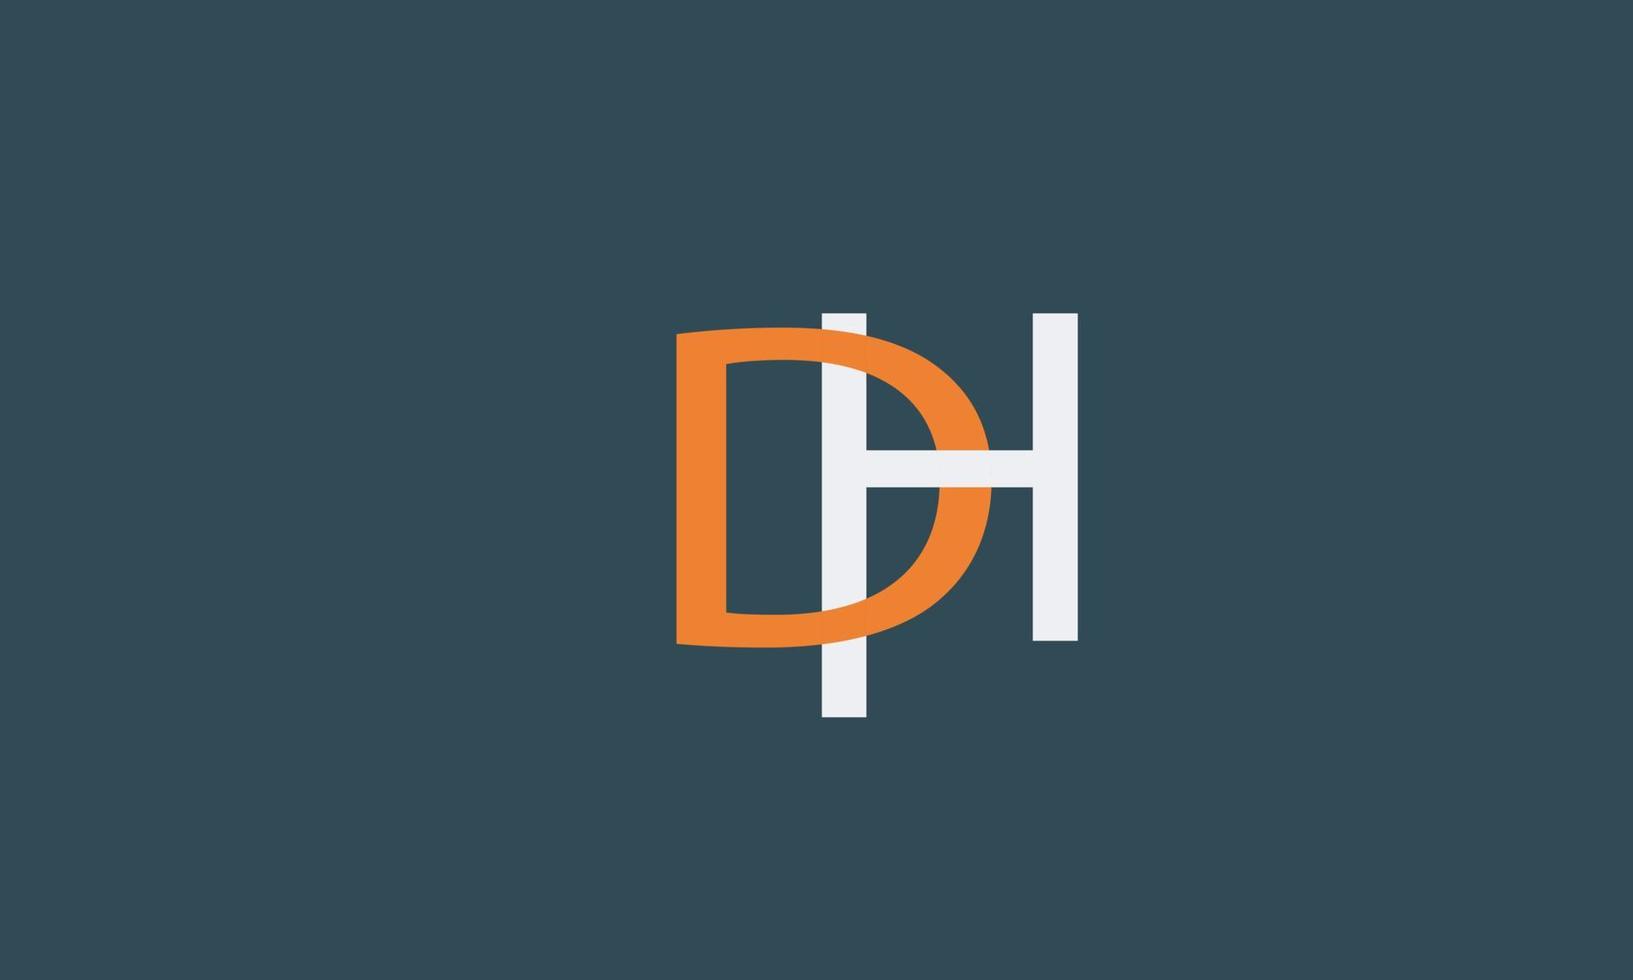 alfabeto letras iniciales monograma logo dh, hd, d y h vector